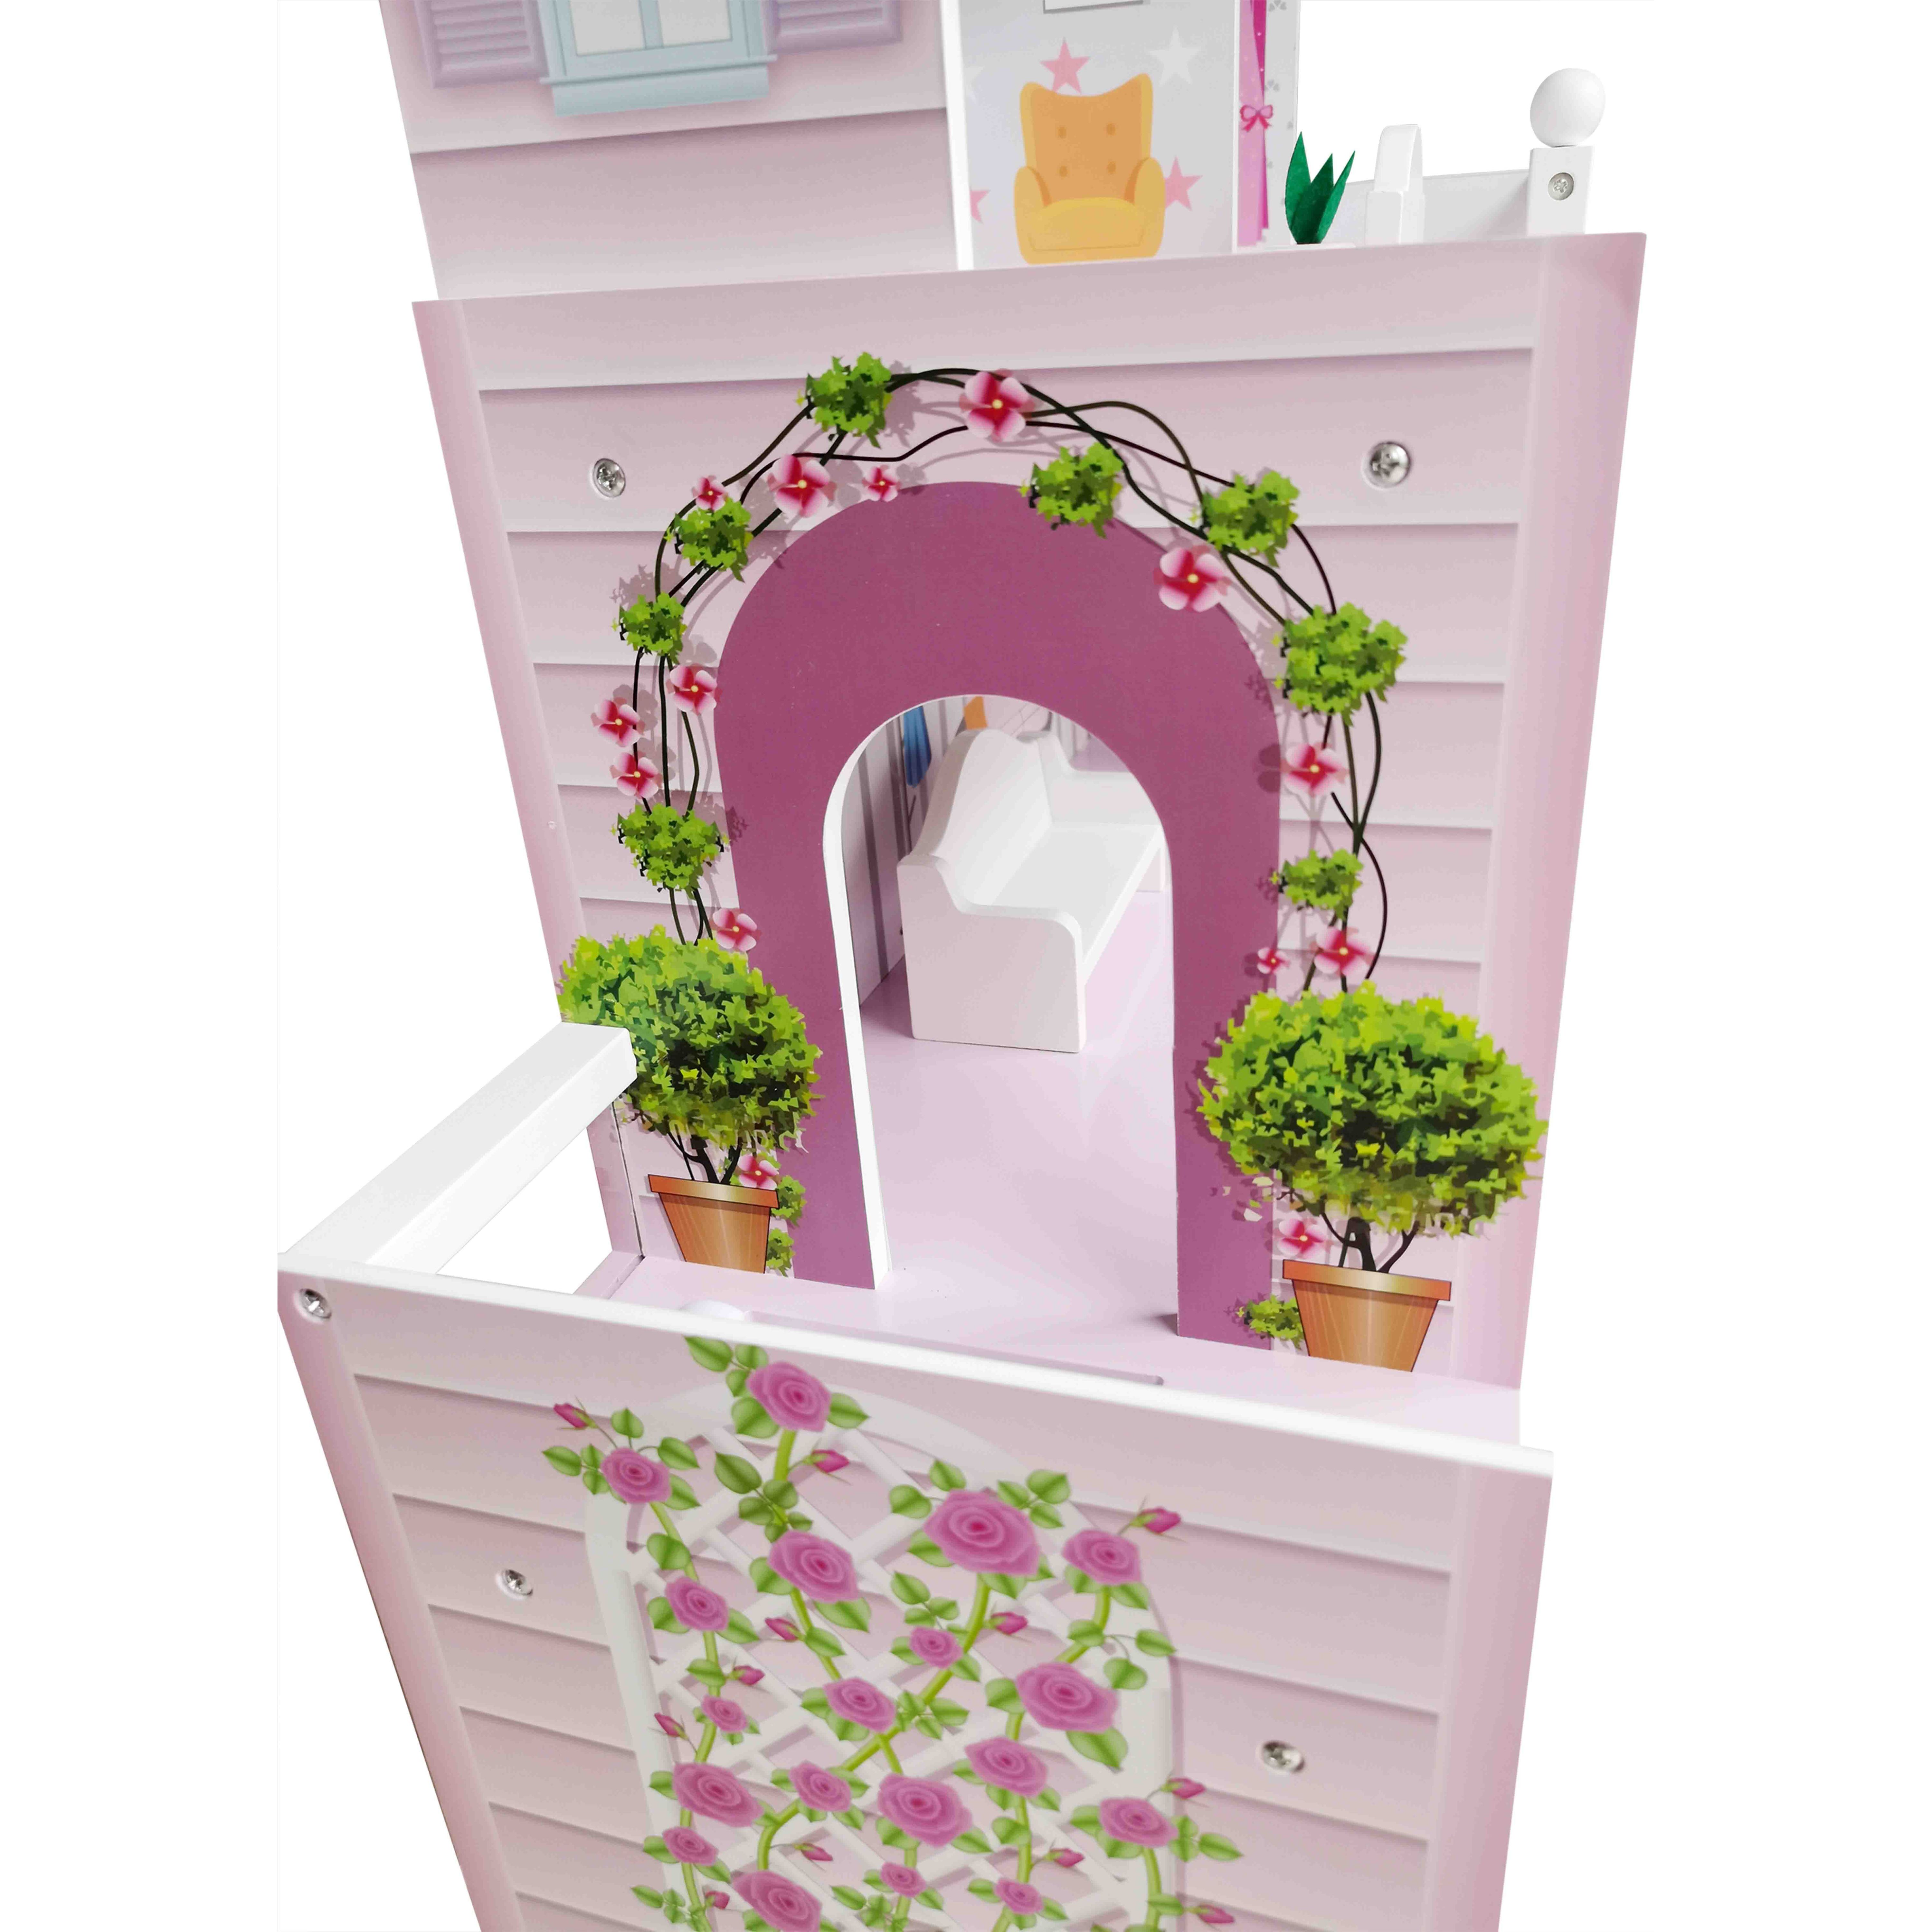 Іграшковий будиночок дерев'яний FreeON рожевий (47290) - фото 10